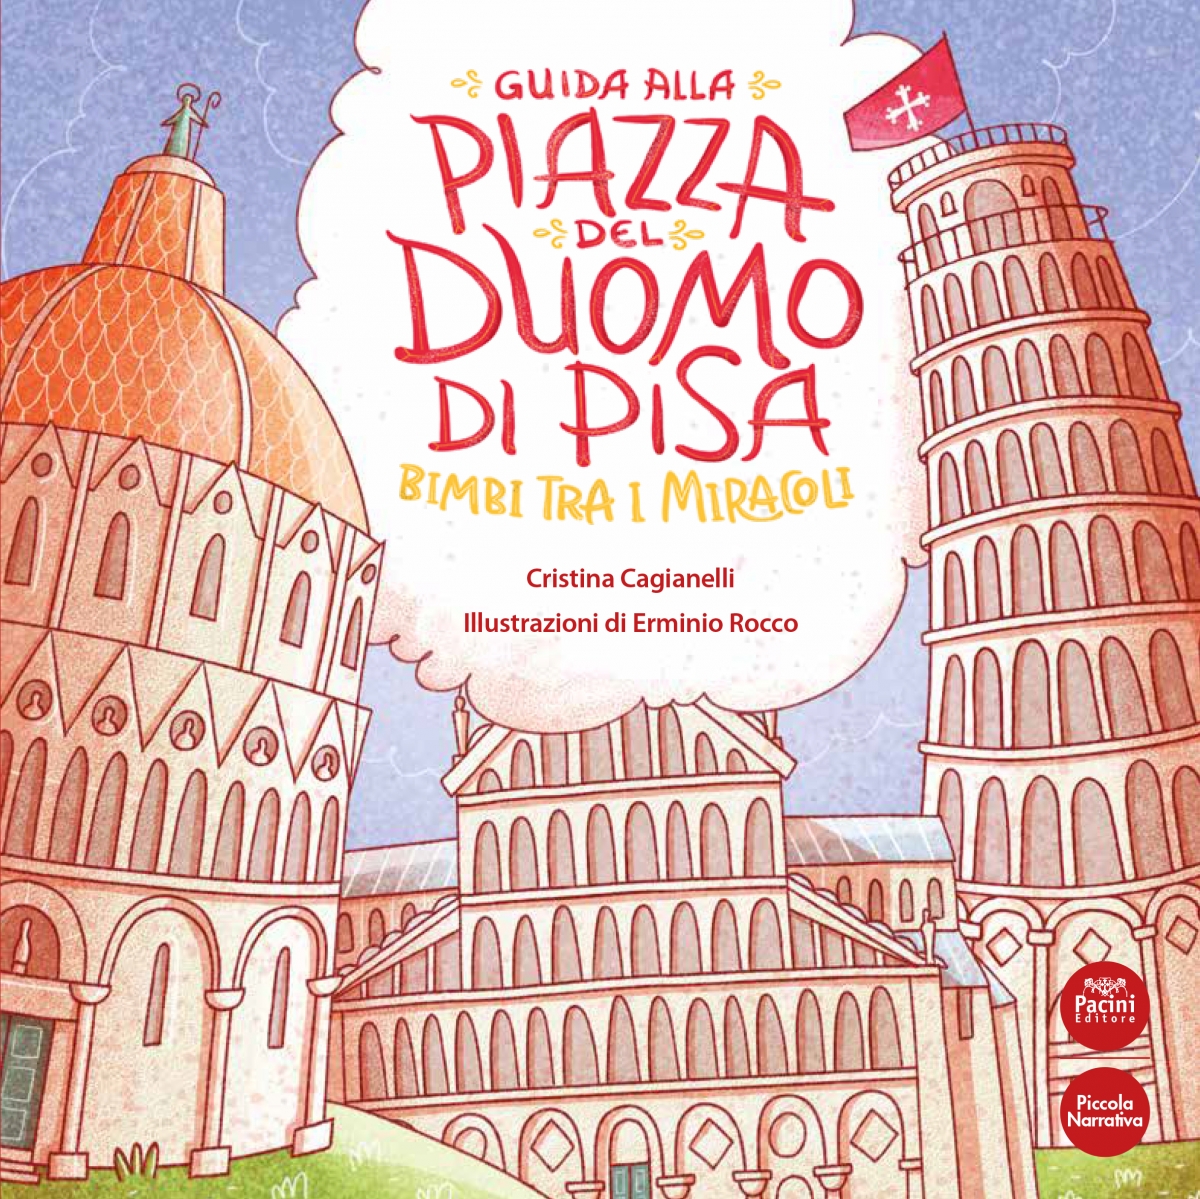 Guida alla Piazza del Duomo di Pisa – Bimbi tra i miracoli